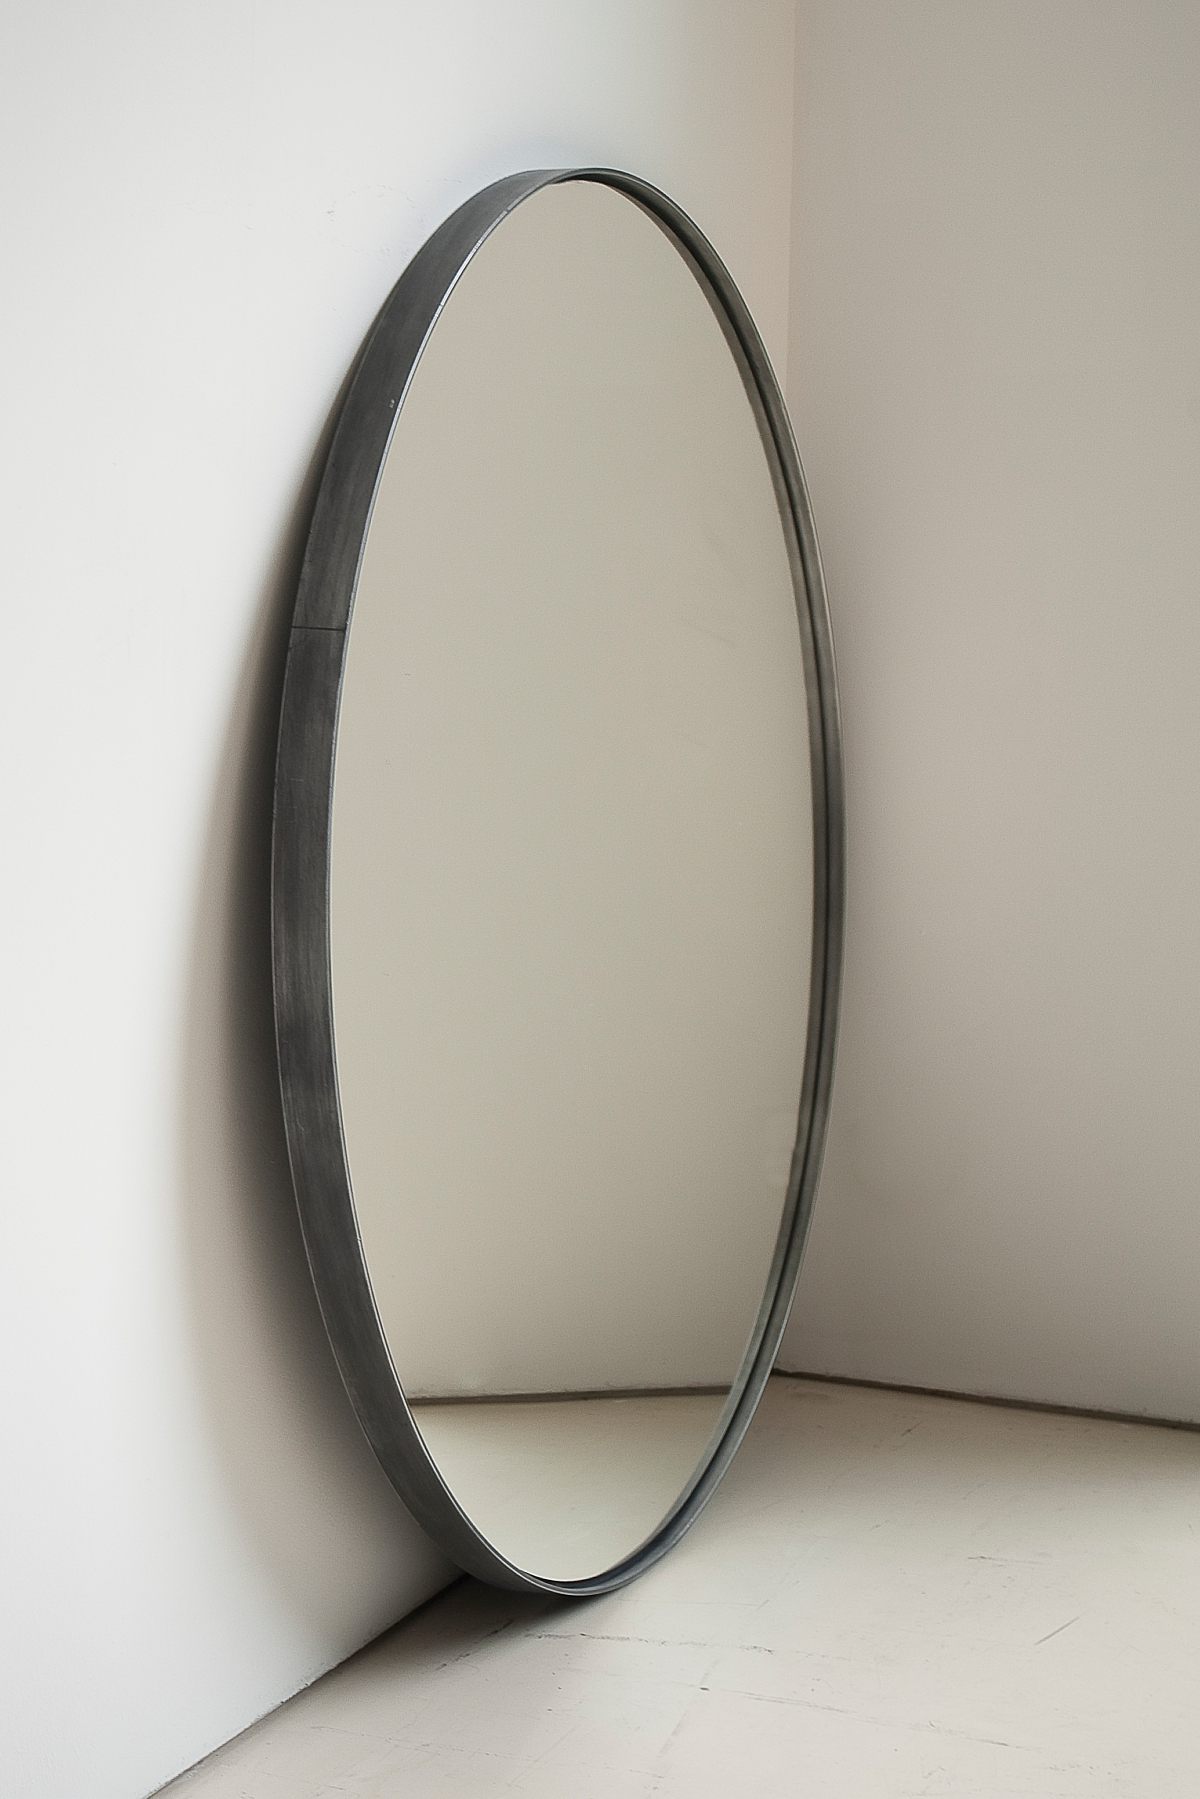 Sober design met ingetogen vormgeving - Spiegels op maat bij Interni Edition.